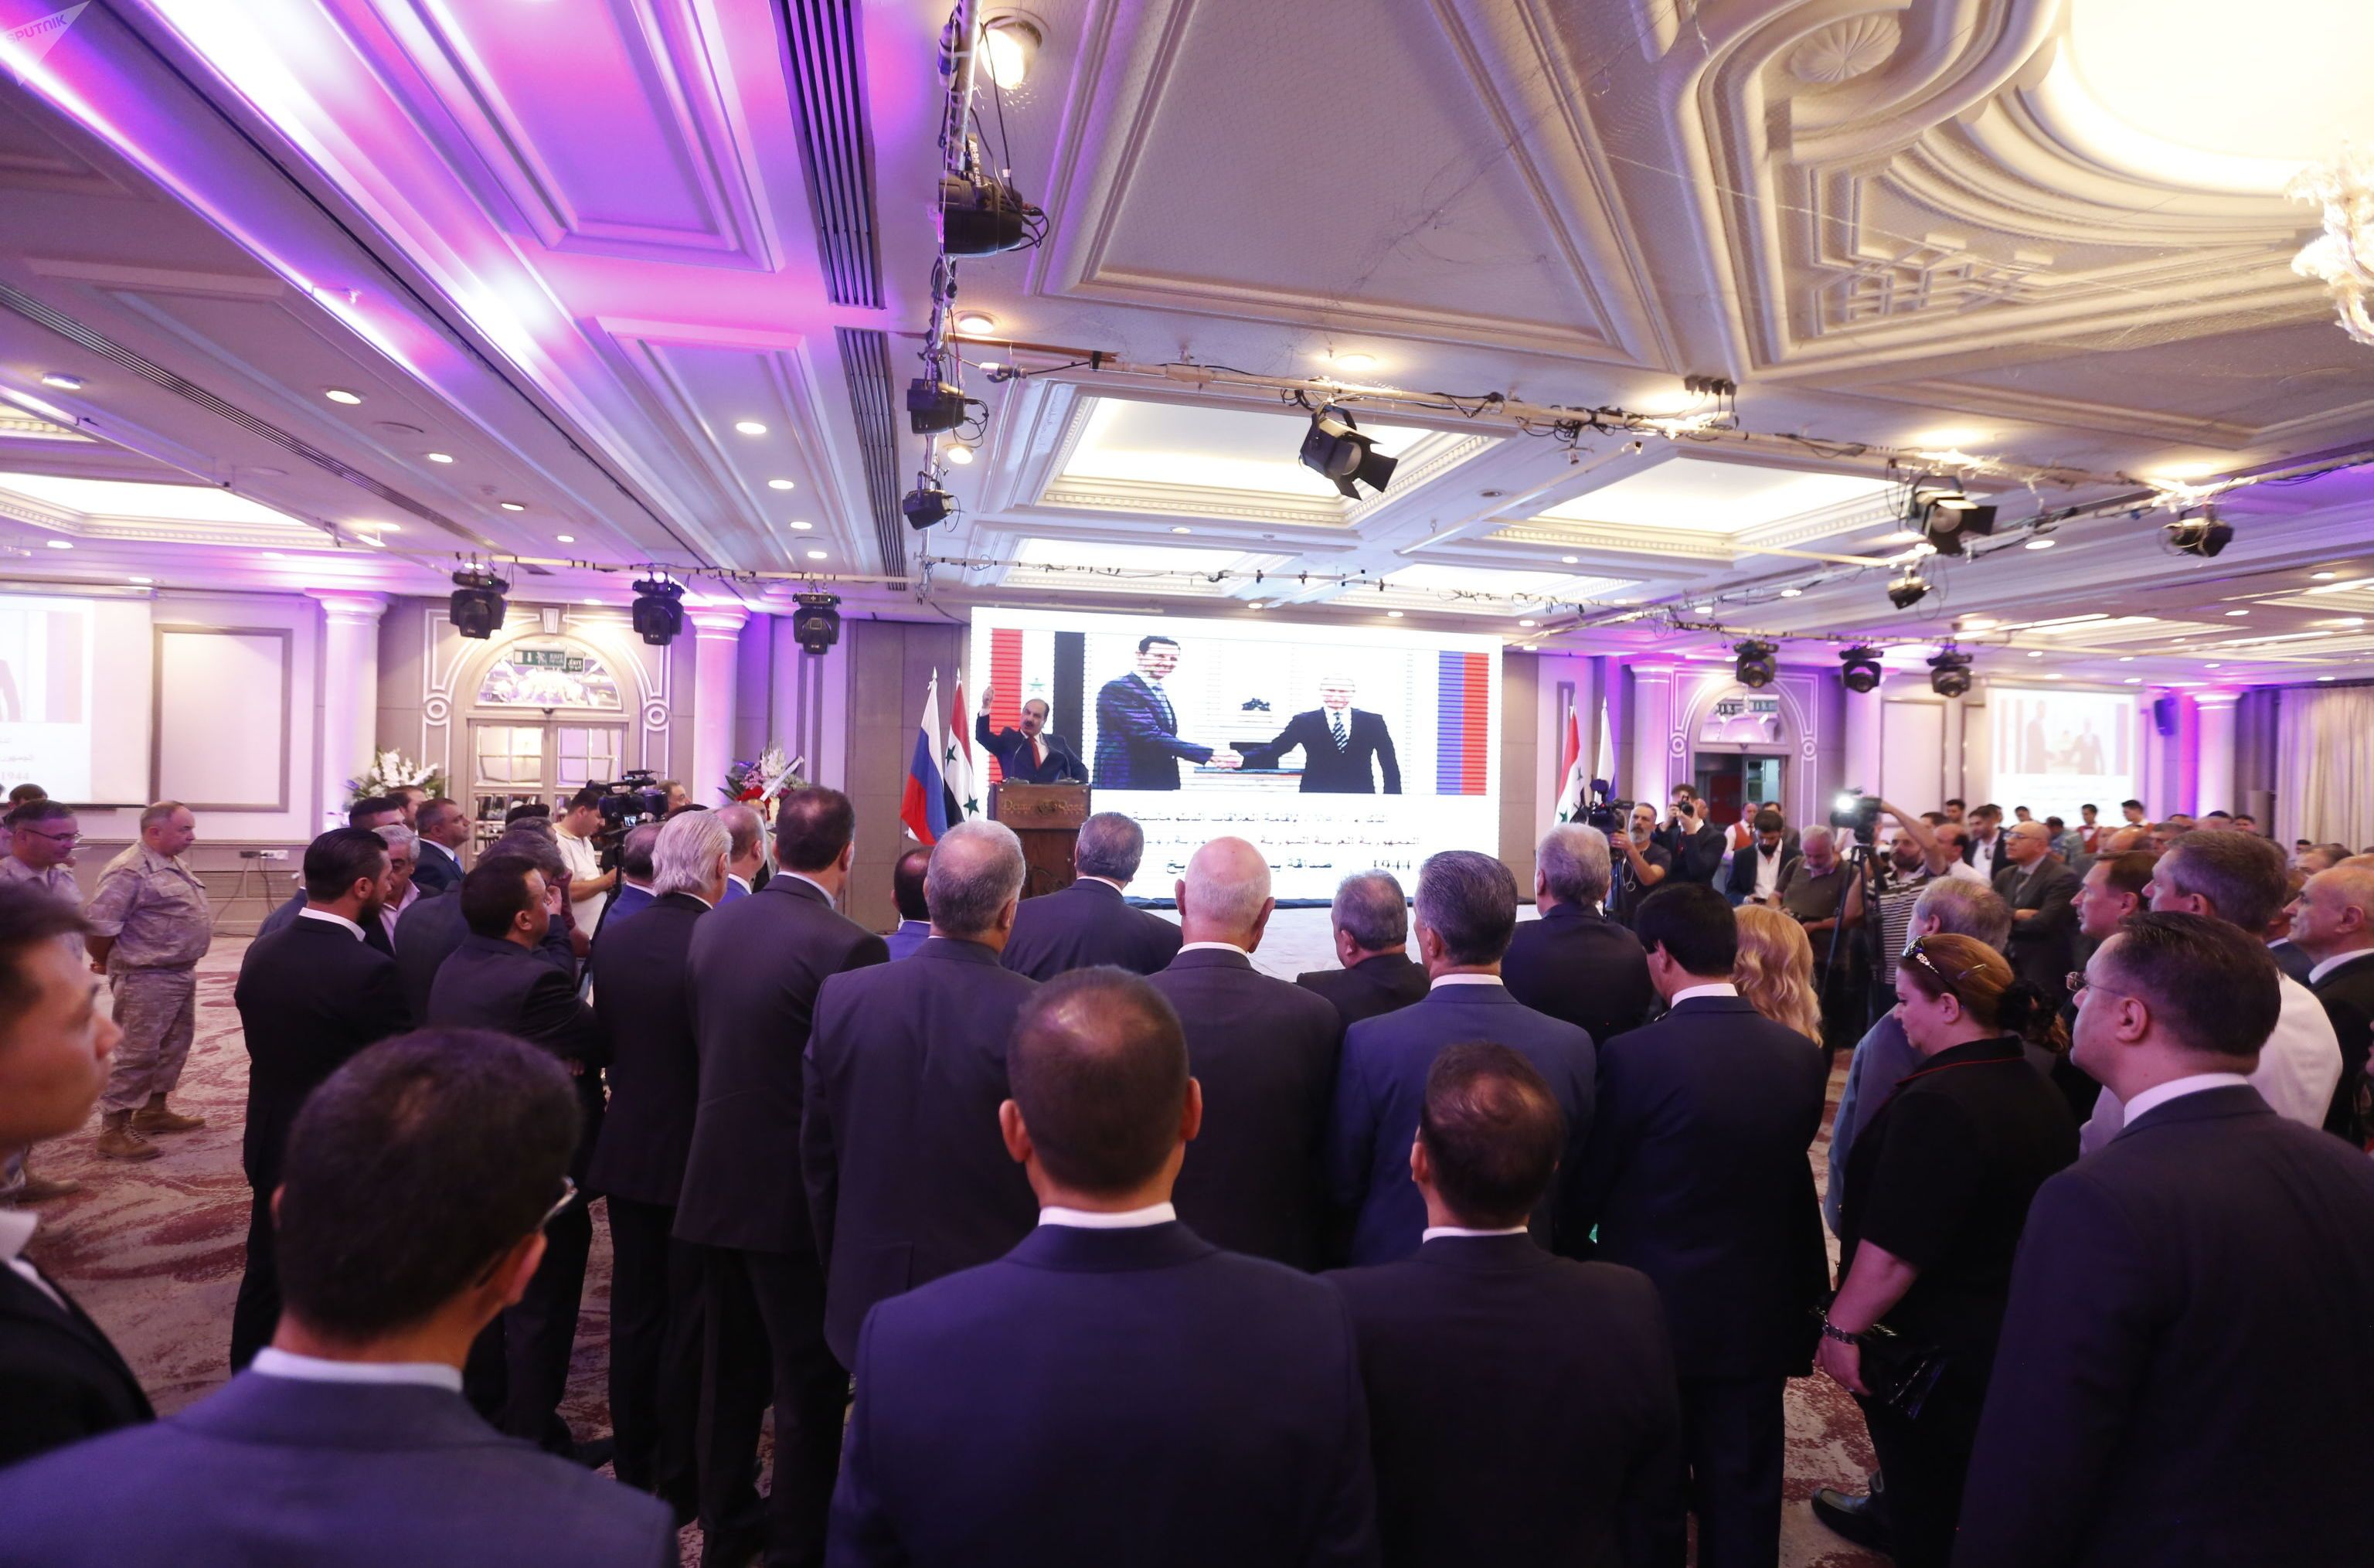 حفل الاستقبال الذي أقامته القيادة المركزية لحزب البعث في دمشق، بمناسبة الذكرى الـ75 على تأسيس العلاقات الدبلوماسية السورية الروسية